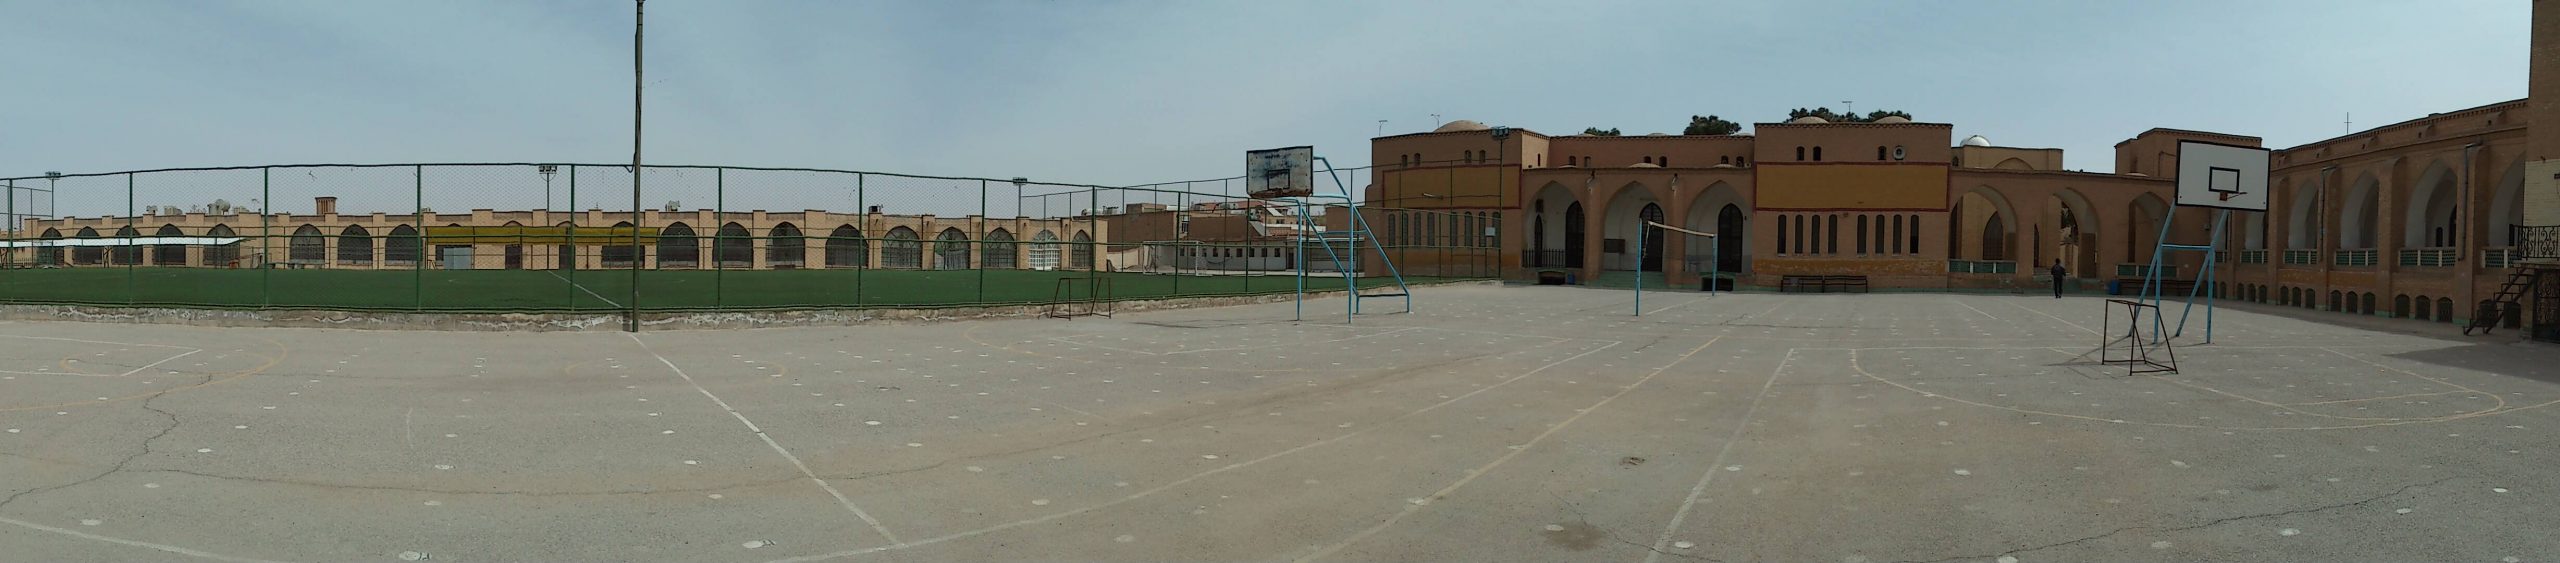 عکس پانوراما دبیرستان ایرانشهر یزد